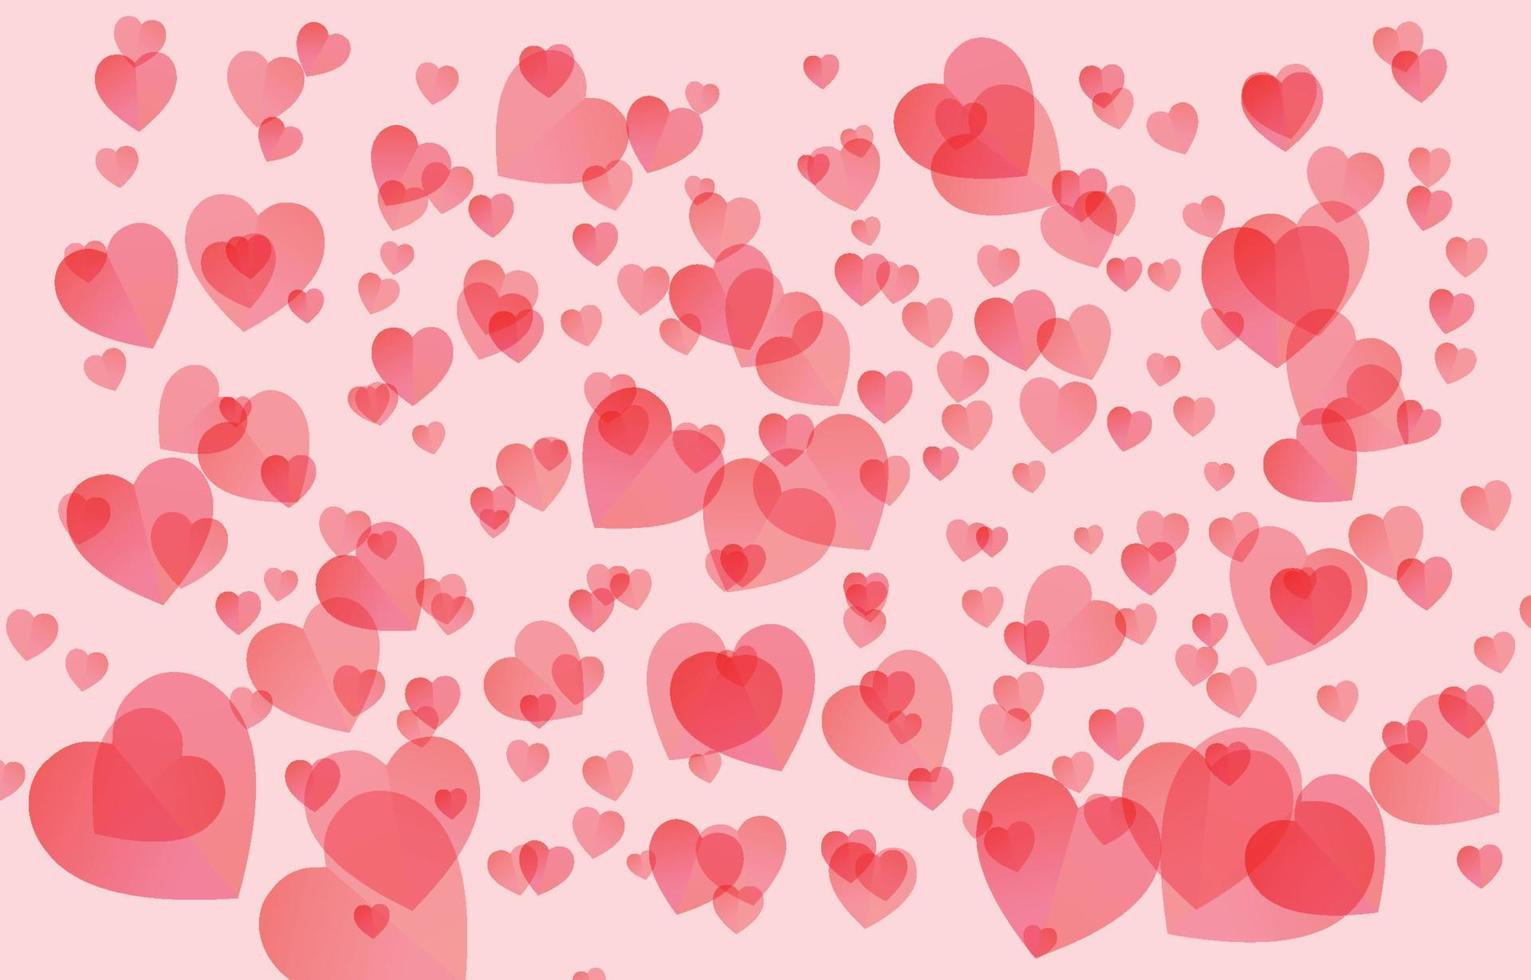 elementos de diseño plano en forma de corazón sobre fondo rosa y dulce. símbolos vectoriales de amor por el feliz día de san valentín, diseño de tarjetas de felicitación. vector